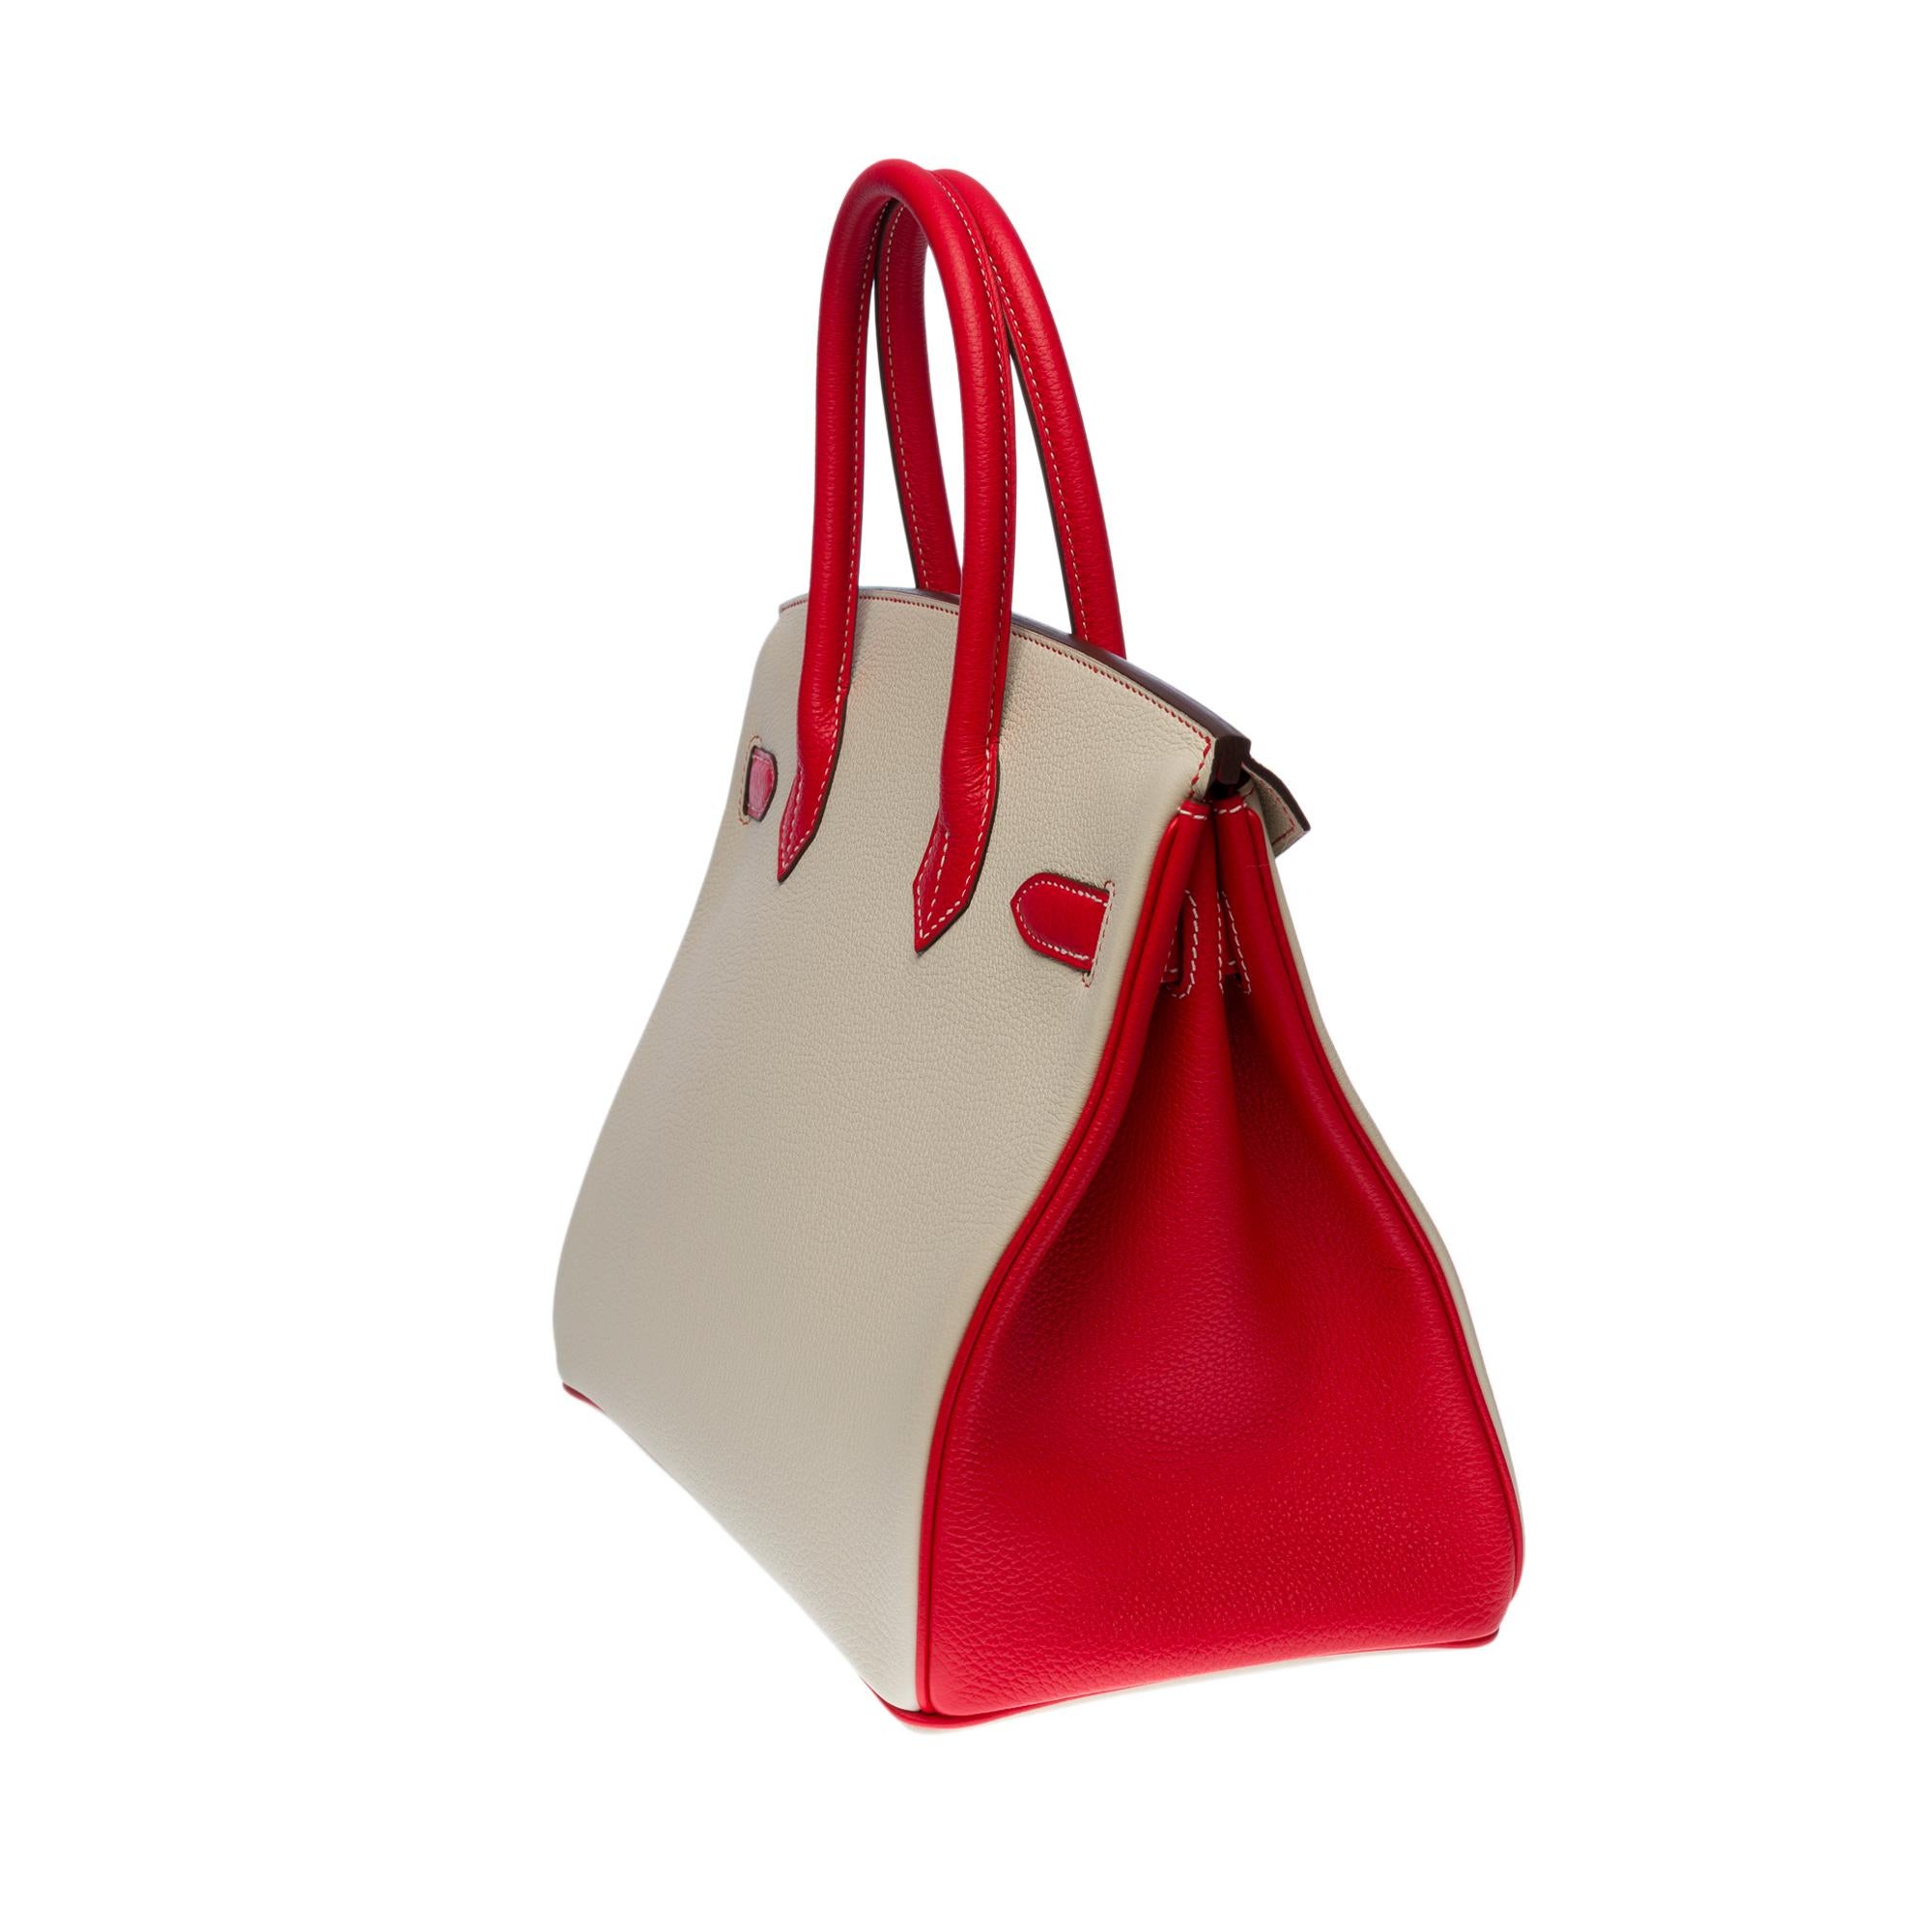 Women's  Hermès Birkin 30 HSS Special Order handbag in Craie/Red Togo leather, PHW